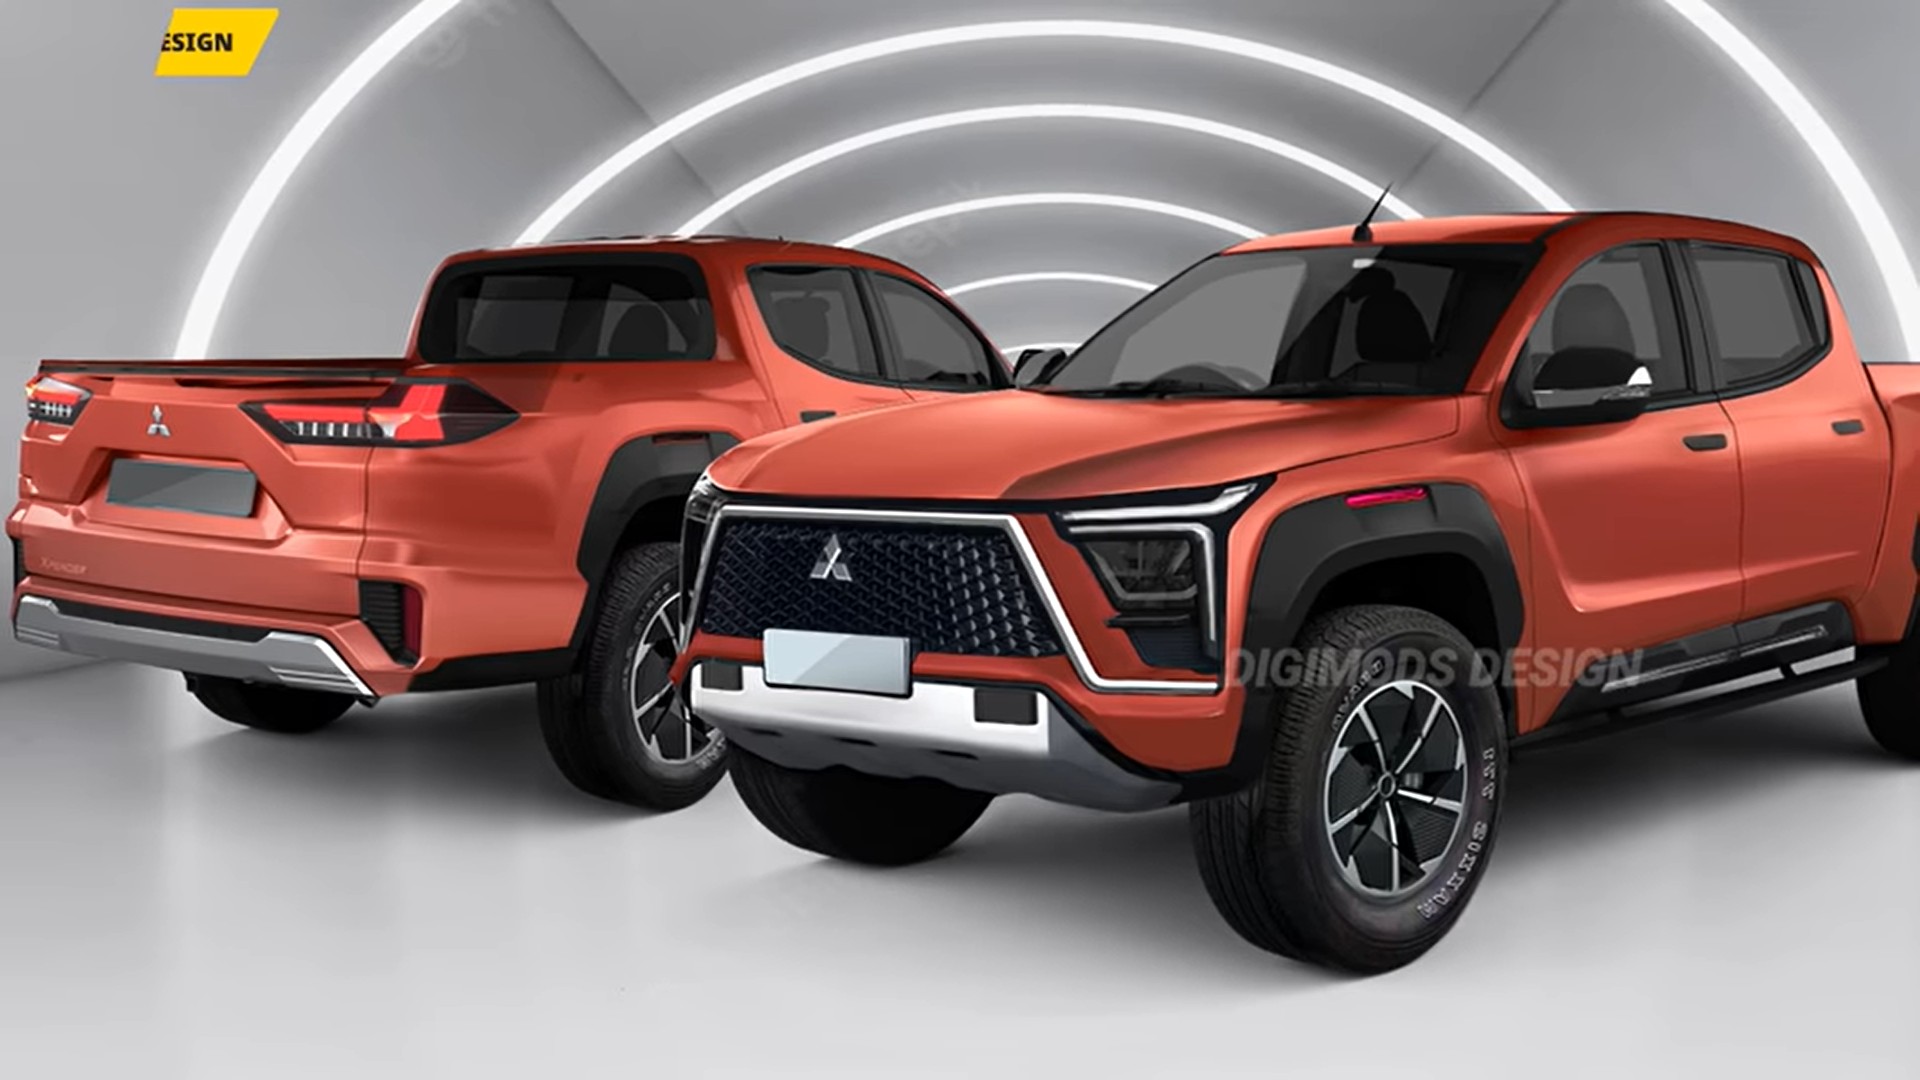 Ảnh phác họa thiết kế Mitsubishi Triton thế hệ mới cực chất, đe dọa Ford Ranger all-new-mitsubishi-l200-triton-unofficially-looks-ready-for-a-ranger-tacoma-brawl-205000-1.jpg